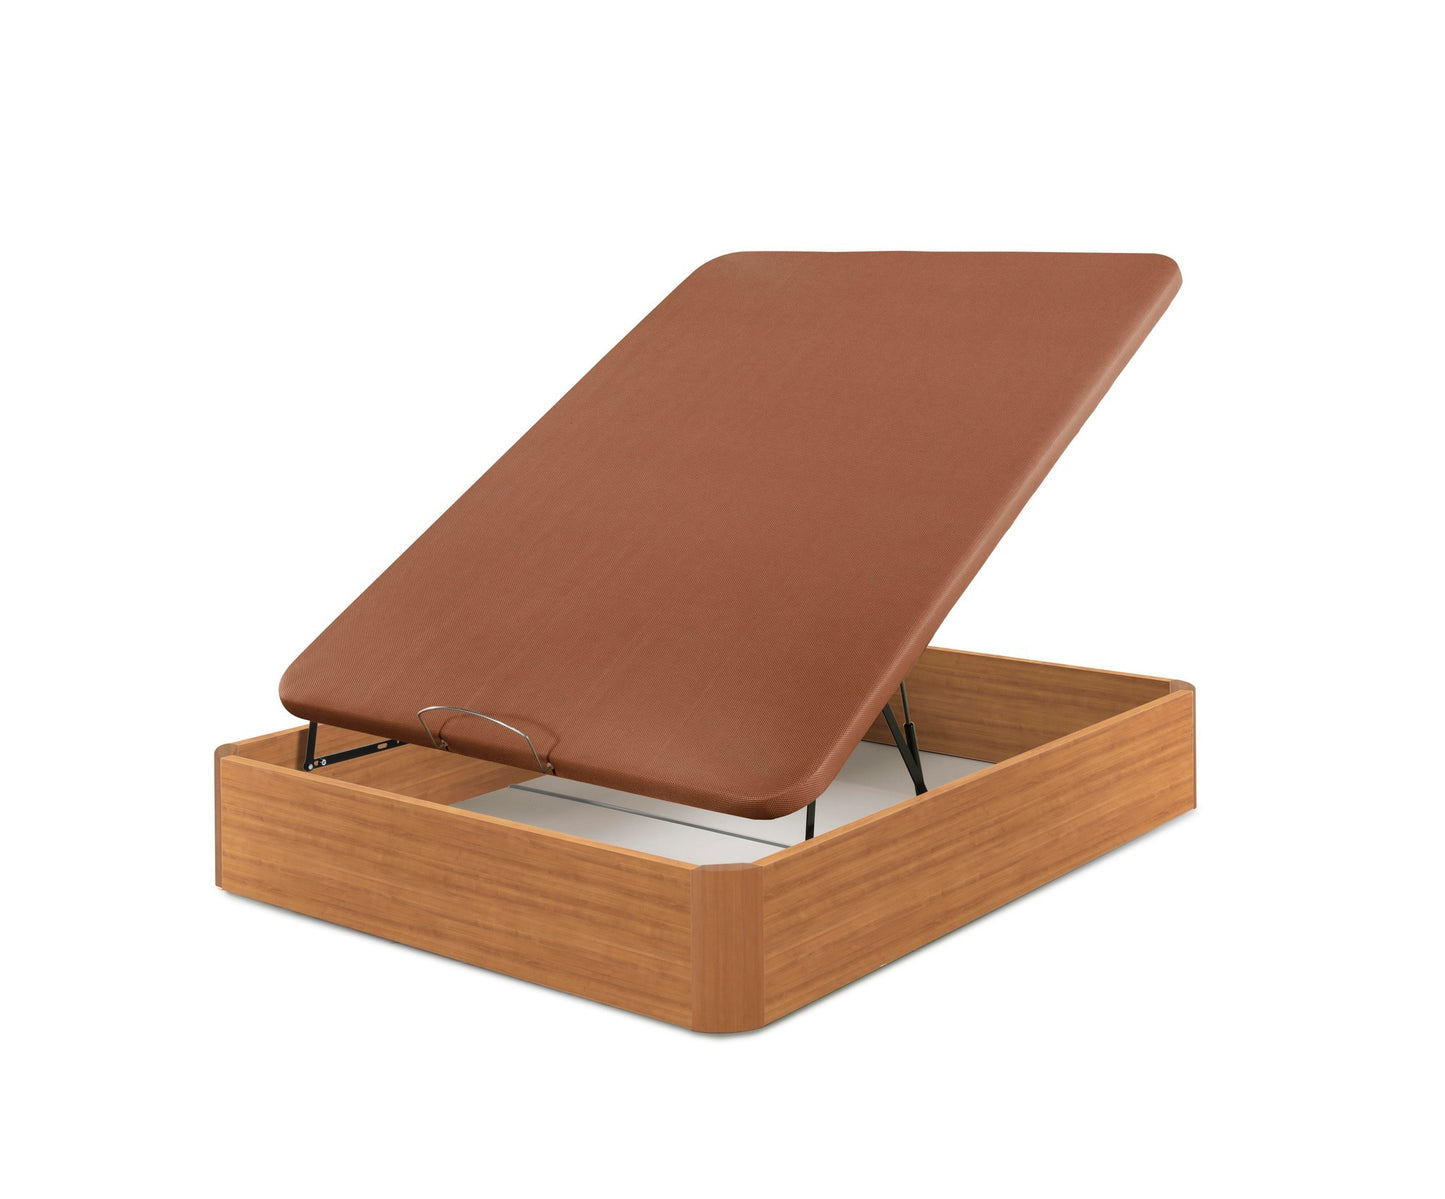 Canapé aus Holz mit hoher Kapazität und Widerstandsfähigkeit | KIRSCHE